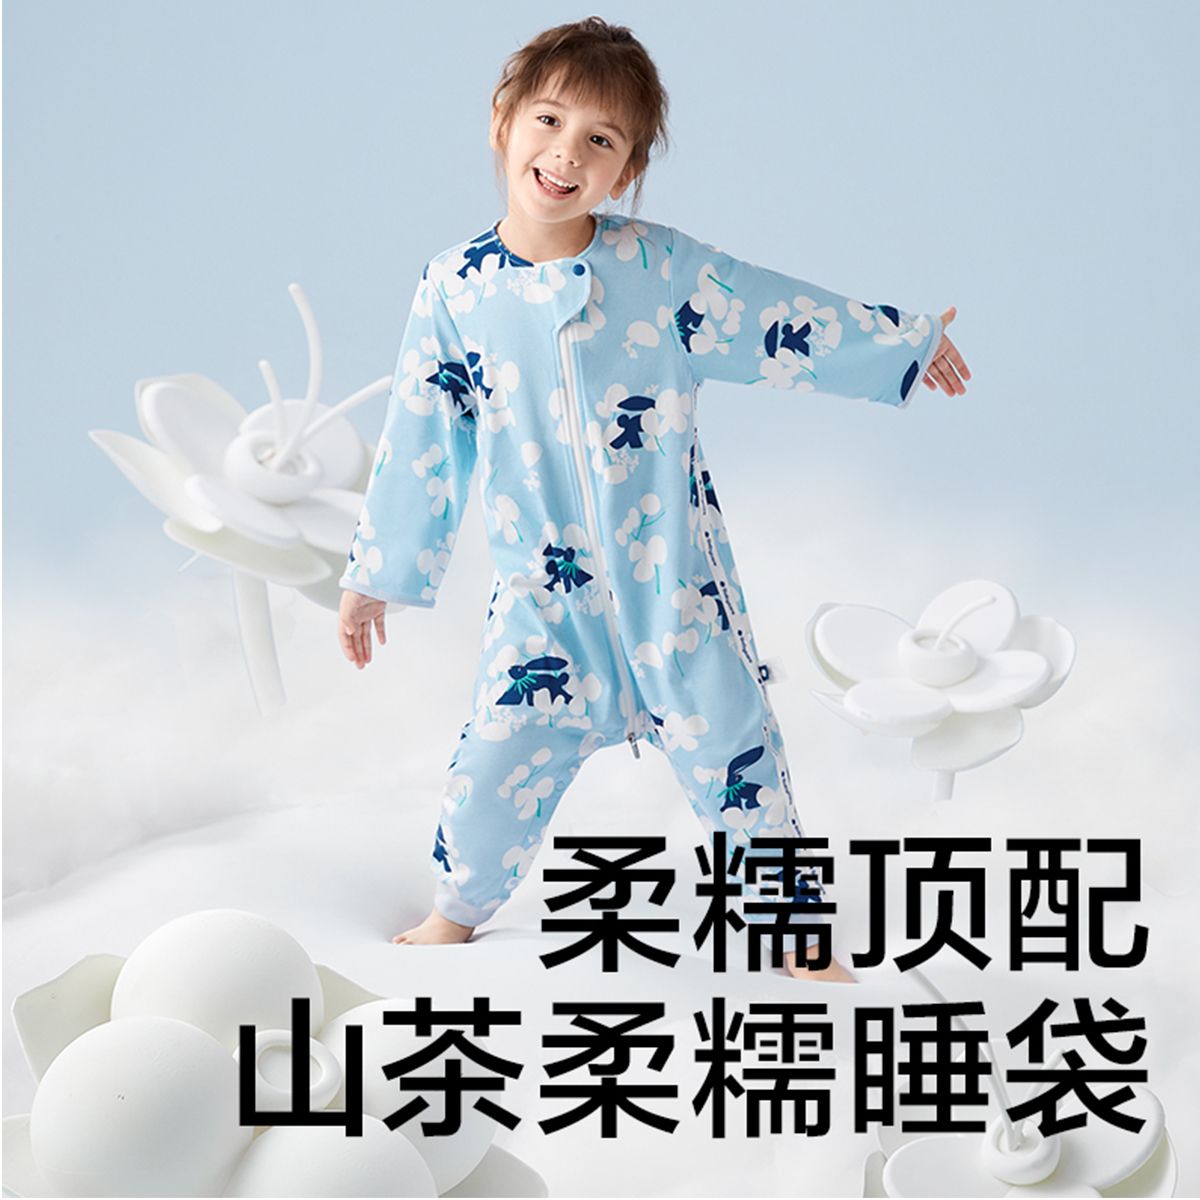 【山茶高端系列】babycare婴幼儿分腿睡袋软糯宝宝防踢被夏季